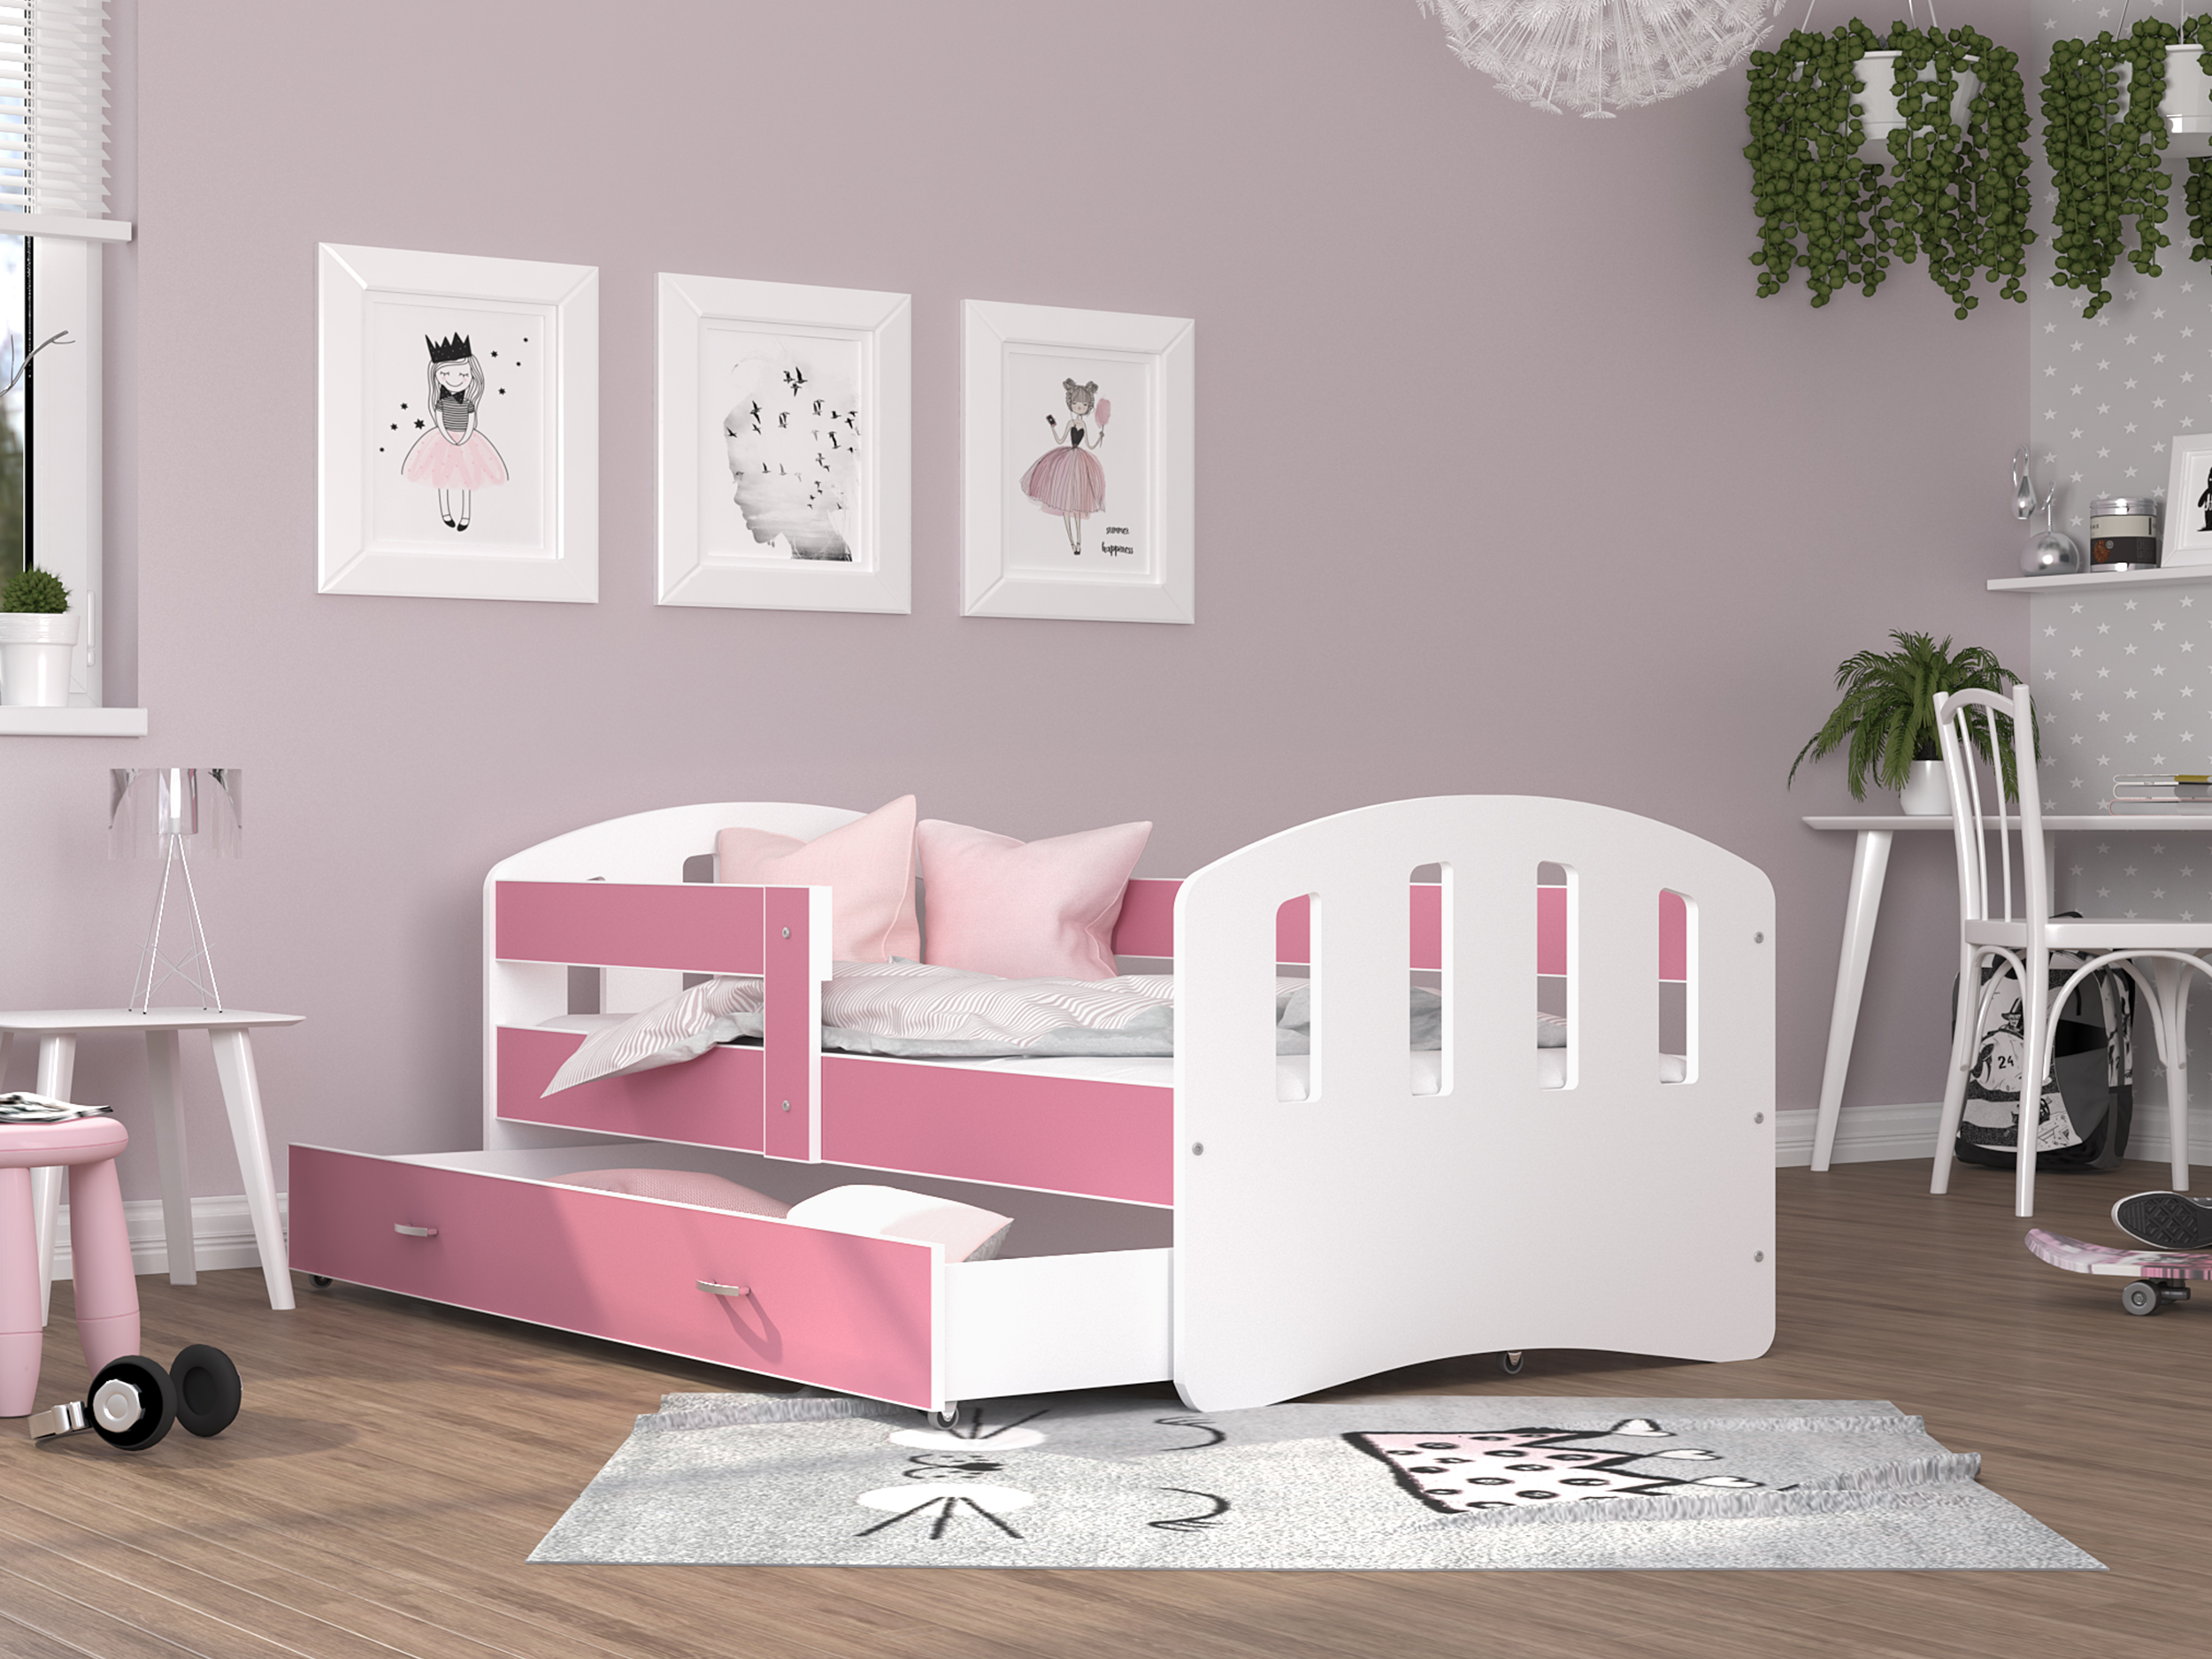 Dětská postel HAPPY 140x80 barevná RŮŽOVÁ-BÍLÁ